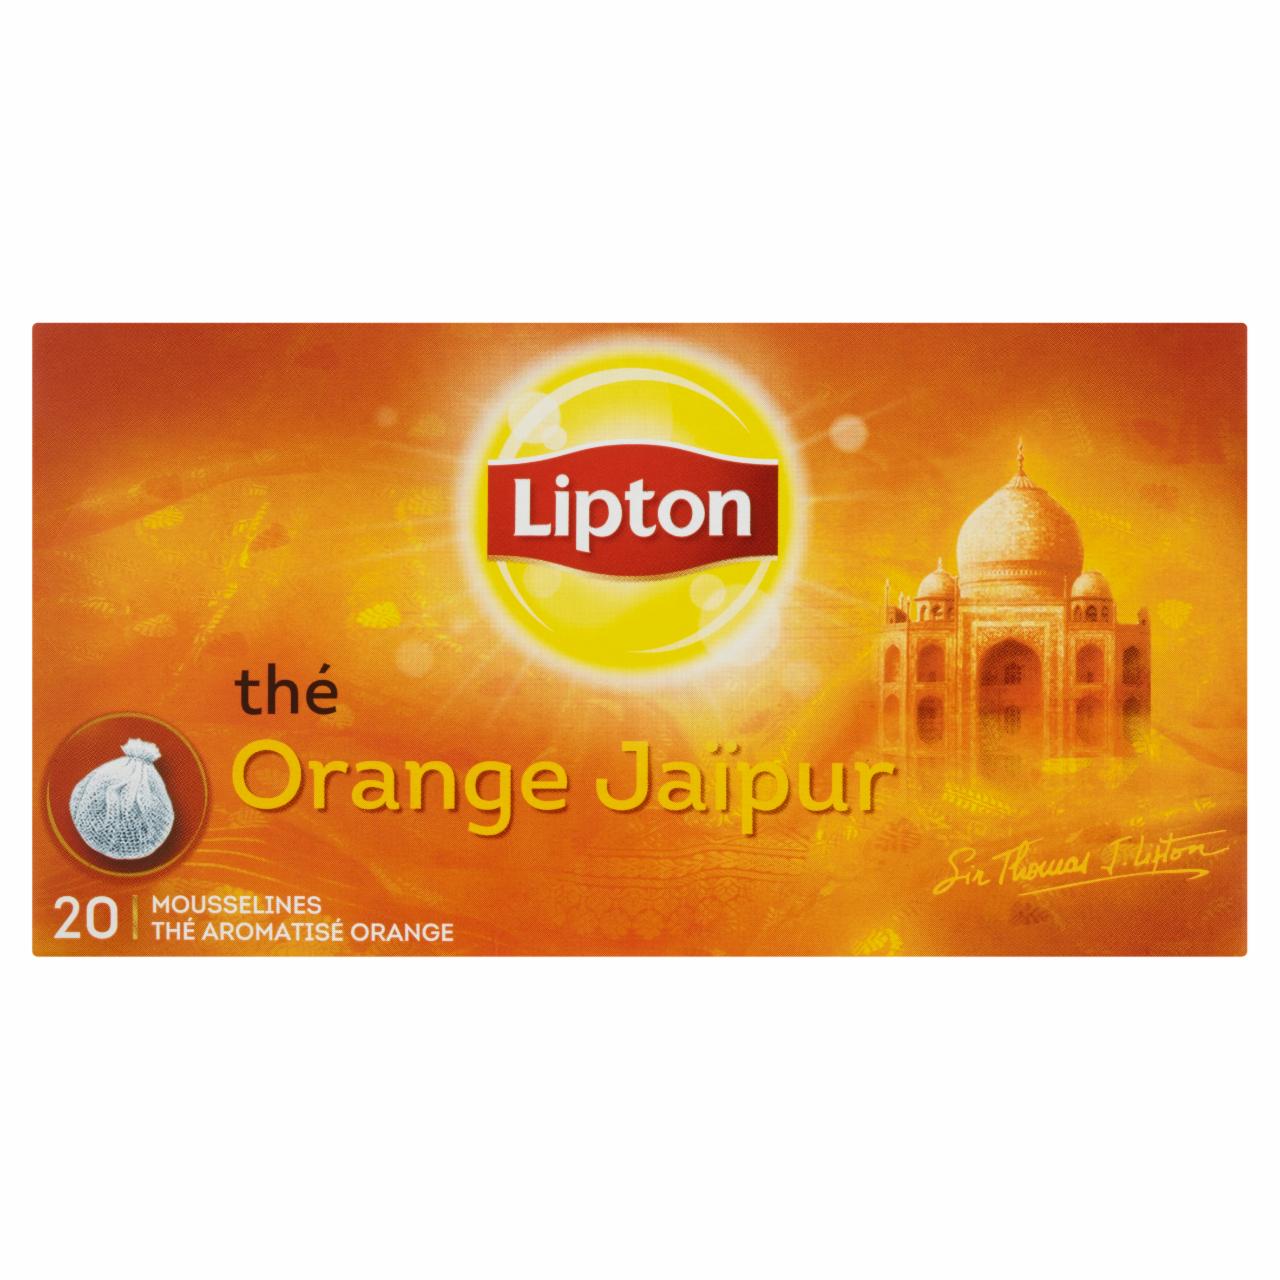 Zdjęcia - Lipton Orange Jaipur Herbata czarna aromatyzowana 40 g (20 torebek)